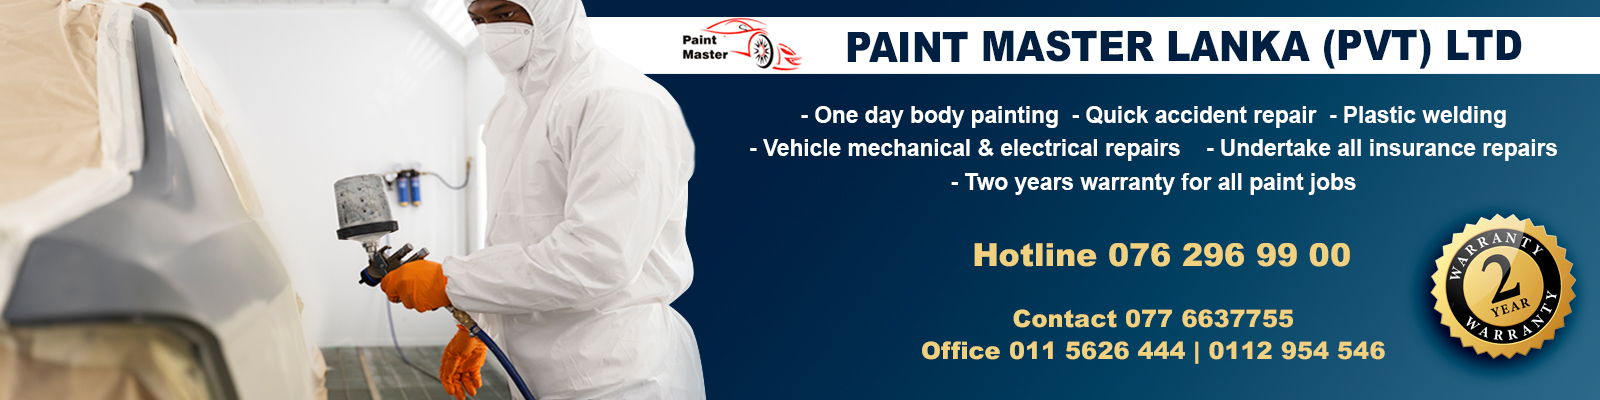 Paint-Master.jpg_Automobile.lk